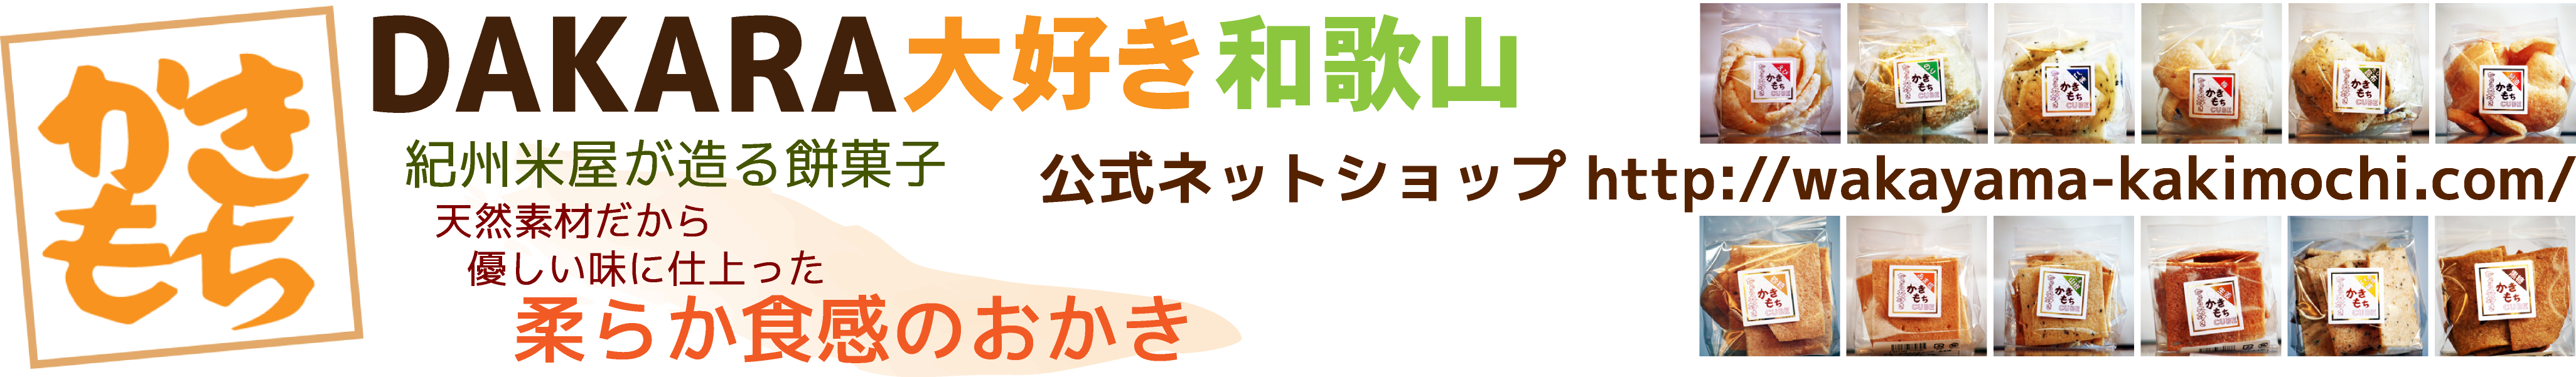 かきもちDAKARA大好き和歌山 公式ネットショップ http://wakayama-kakimochi.com/